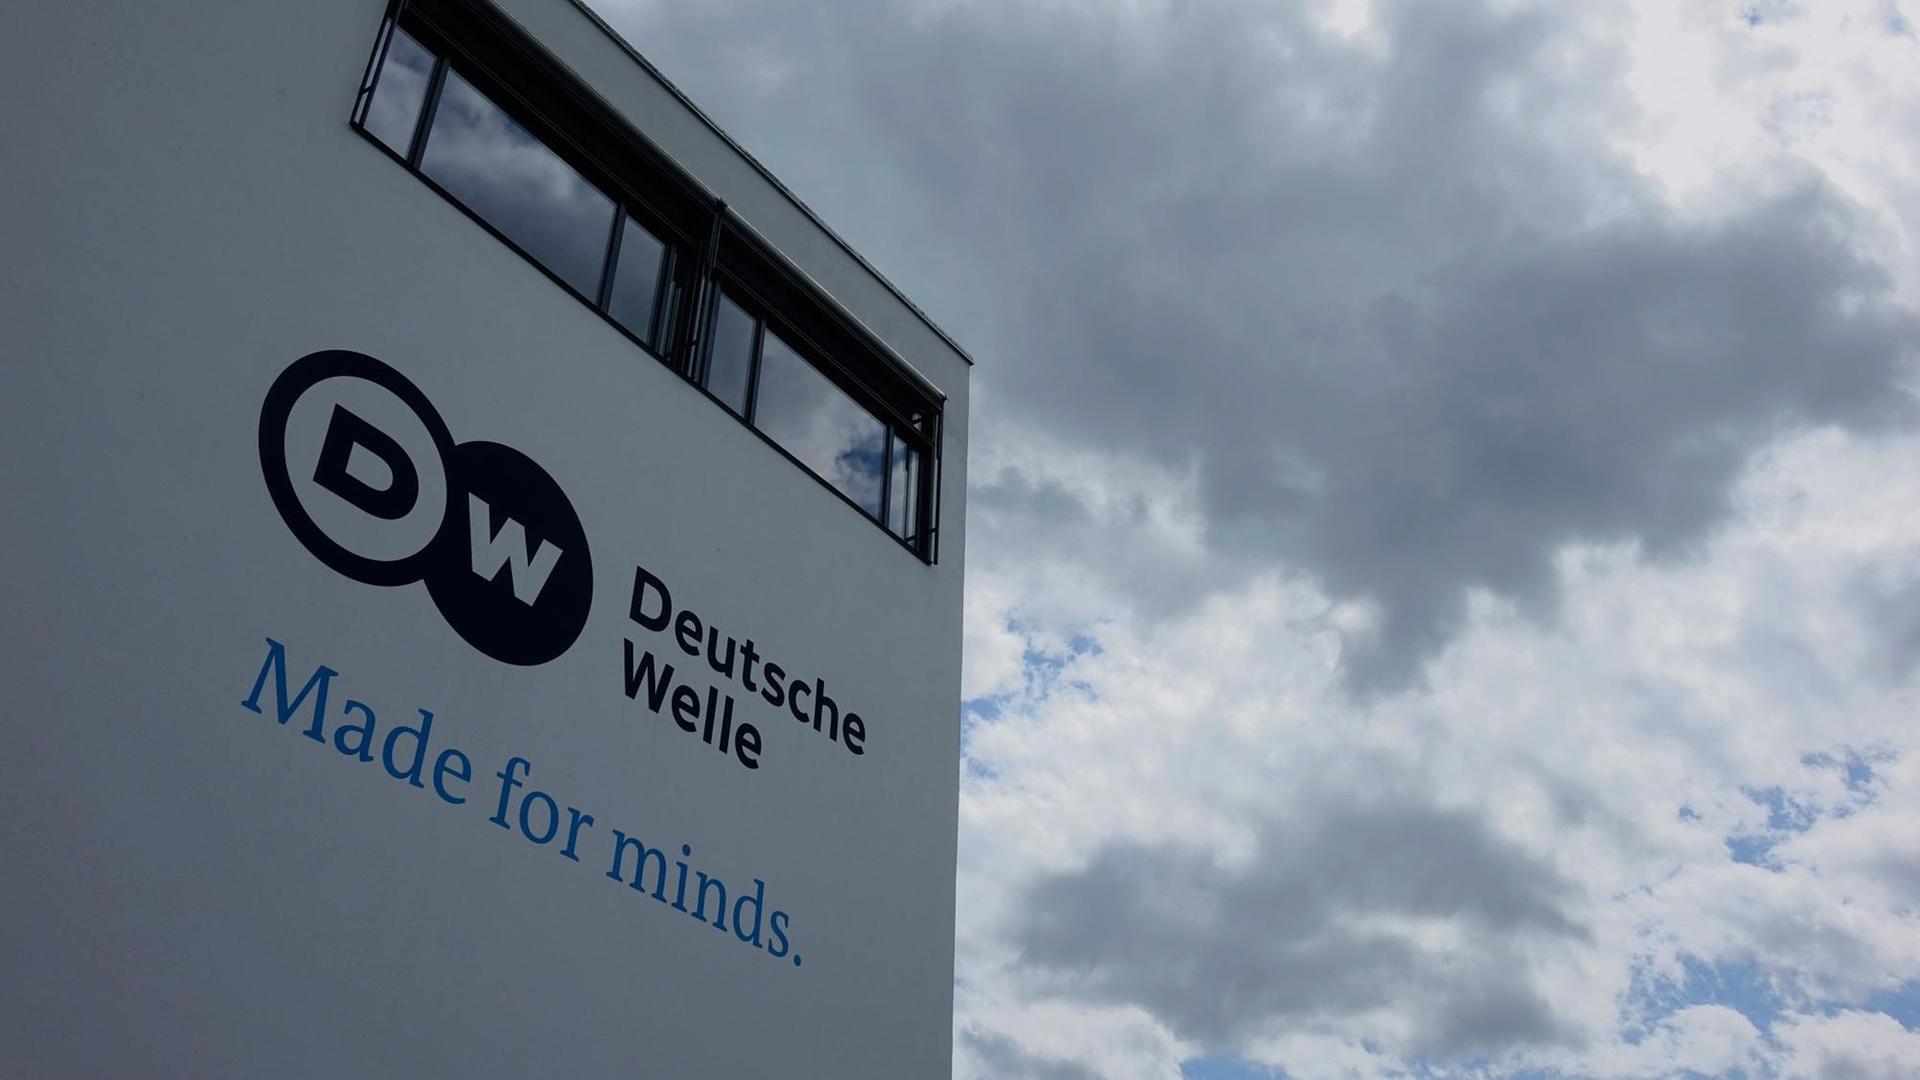 Der sogenannte Schürmannbau, Sitz der "Deutschen Welle" in Bonn. Im Hintergrund ziehen dunkle Wolken auf.